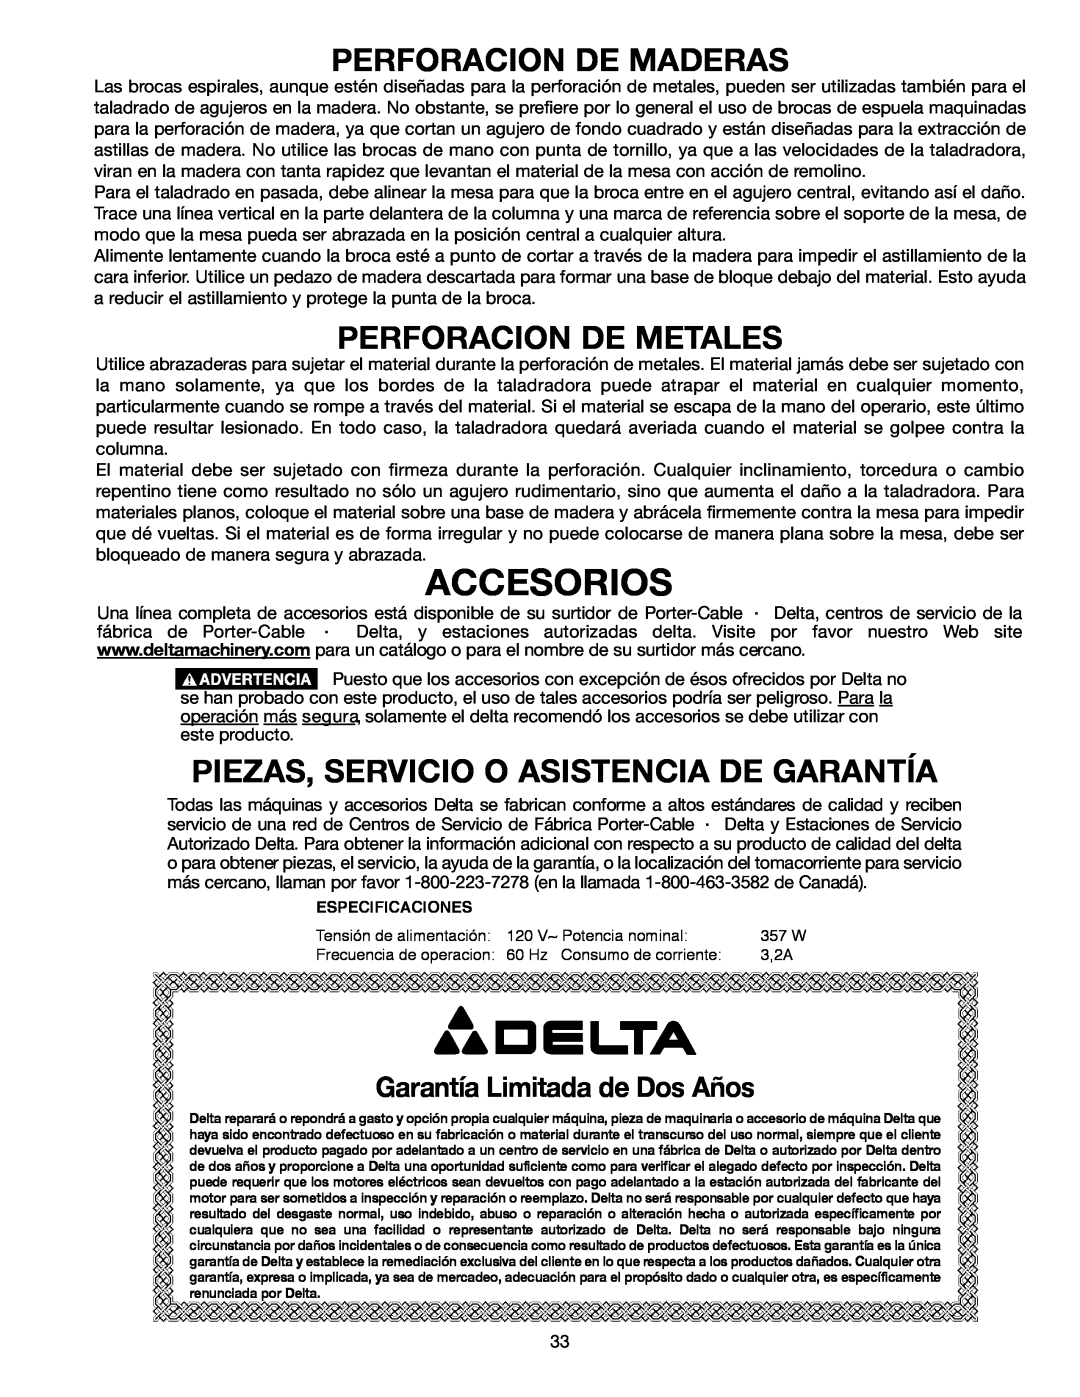 Delta 638517-00, SM300 warranty Perforacion De Maderas, Perforacion De Metales, Piezas, Servicio O Asistencia De Garantía 